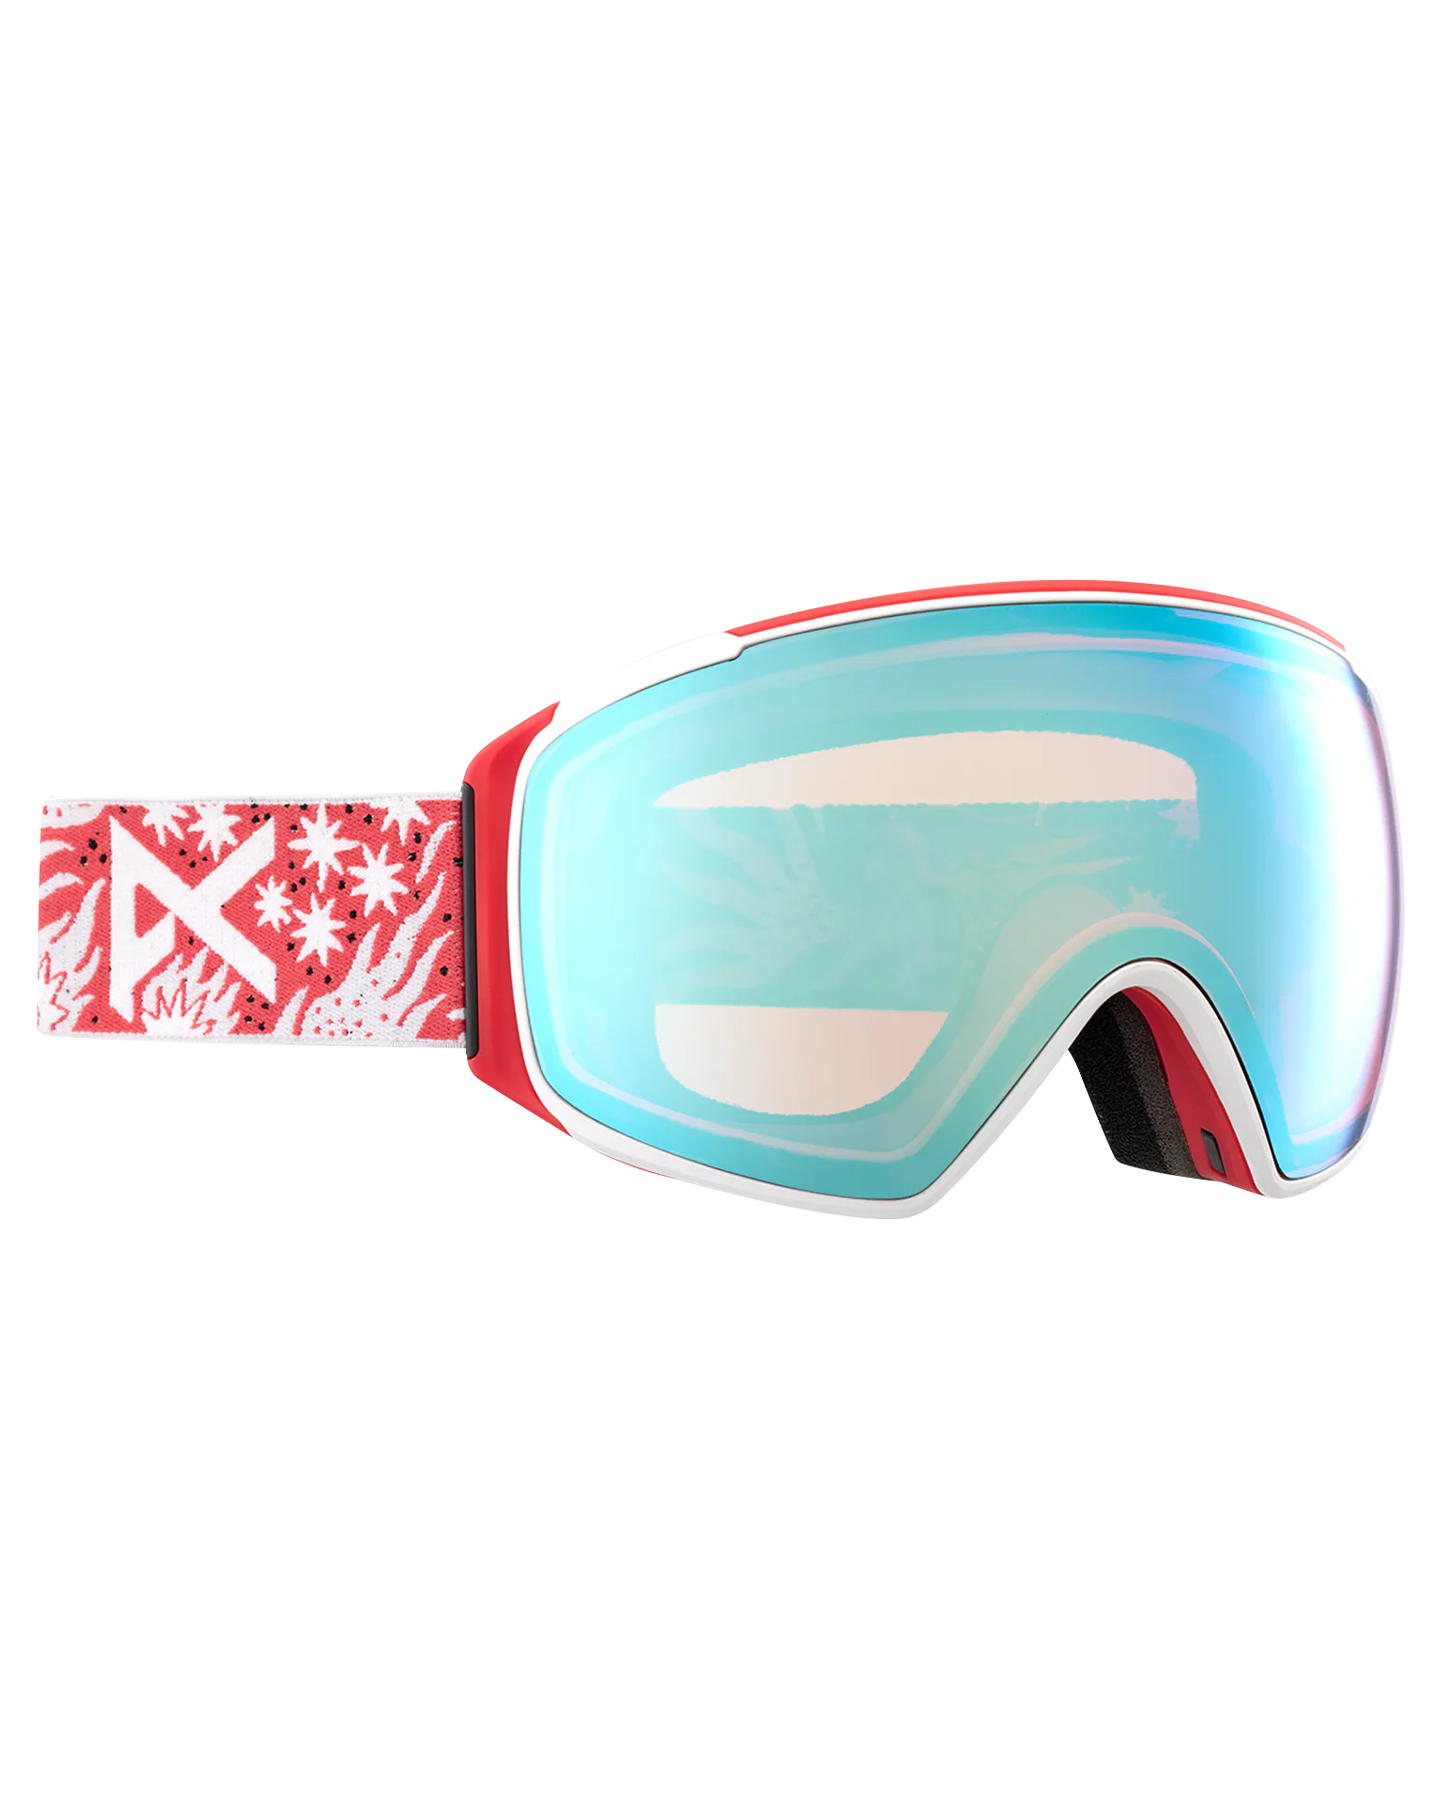 Anon M4S Toric Snow Goggles + Bonus Lens + Mfi® Face Mask - Joshua Noom/Perceive Variable Blue Lens Men's Snow Goggles - Trojan Wake Ski Snow